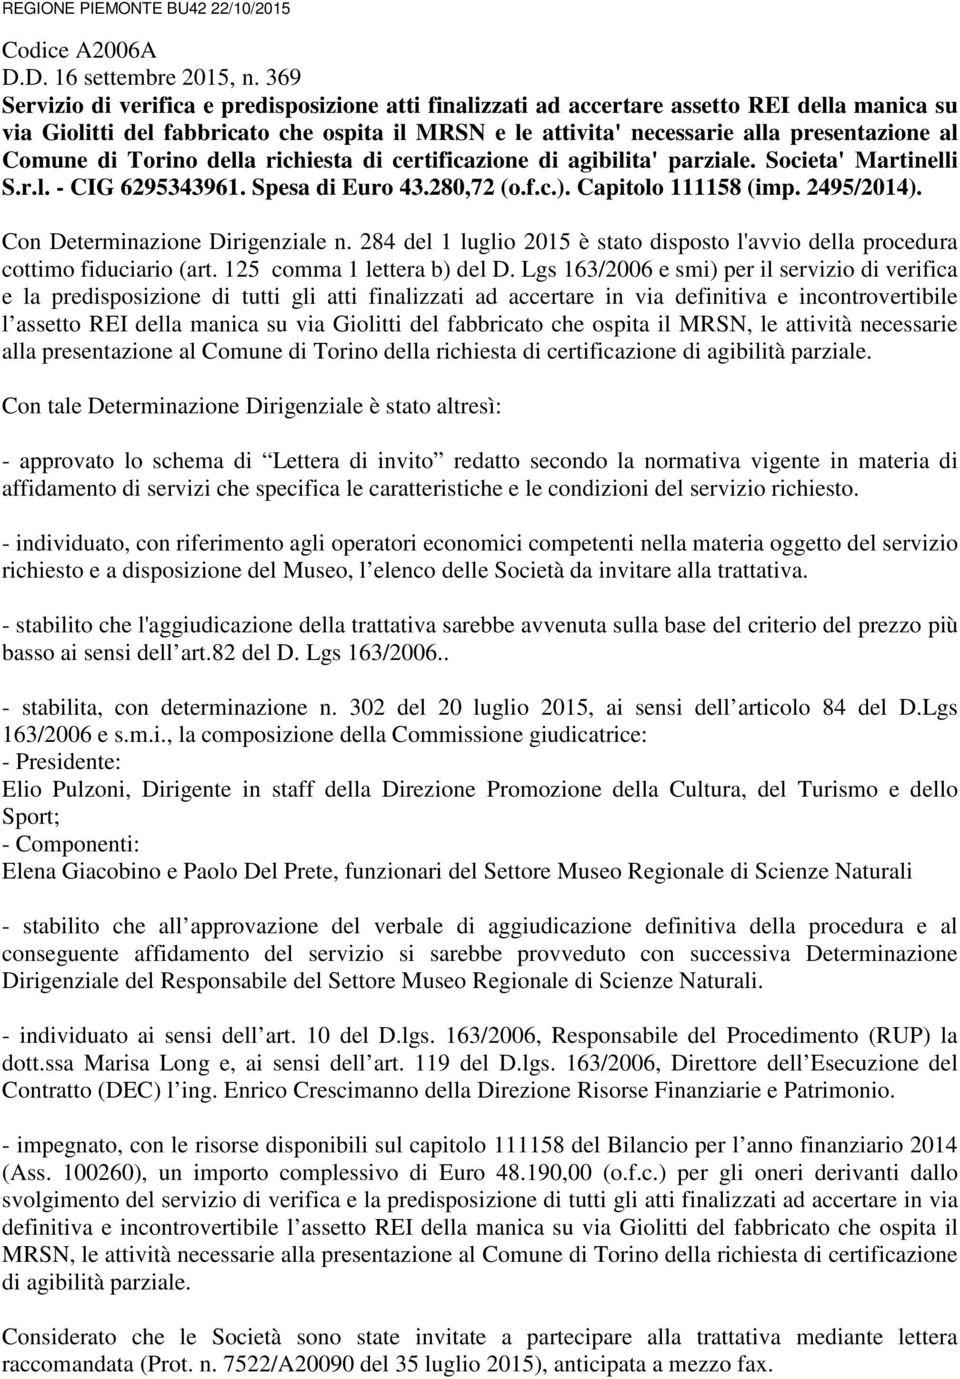 Comune di Torino della richiesta di certificazione di agibilita' parziale. Societa' Martinelli S.r.l. - CIG 6295343961. Spesa di Euro 43.280,72 (o.f.c.). Capitolo 111158 (imp. 2495/2014).